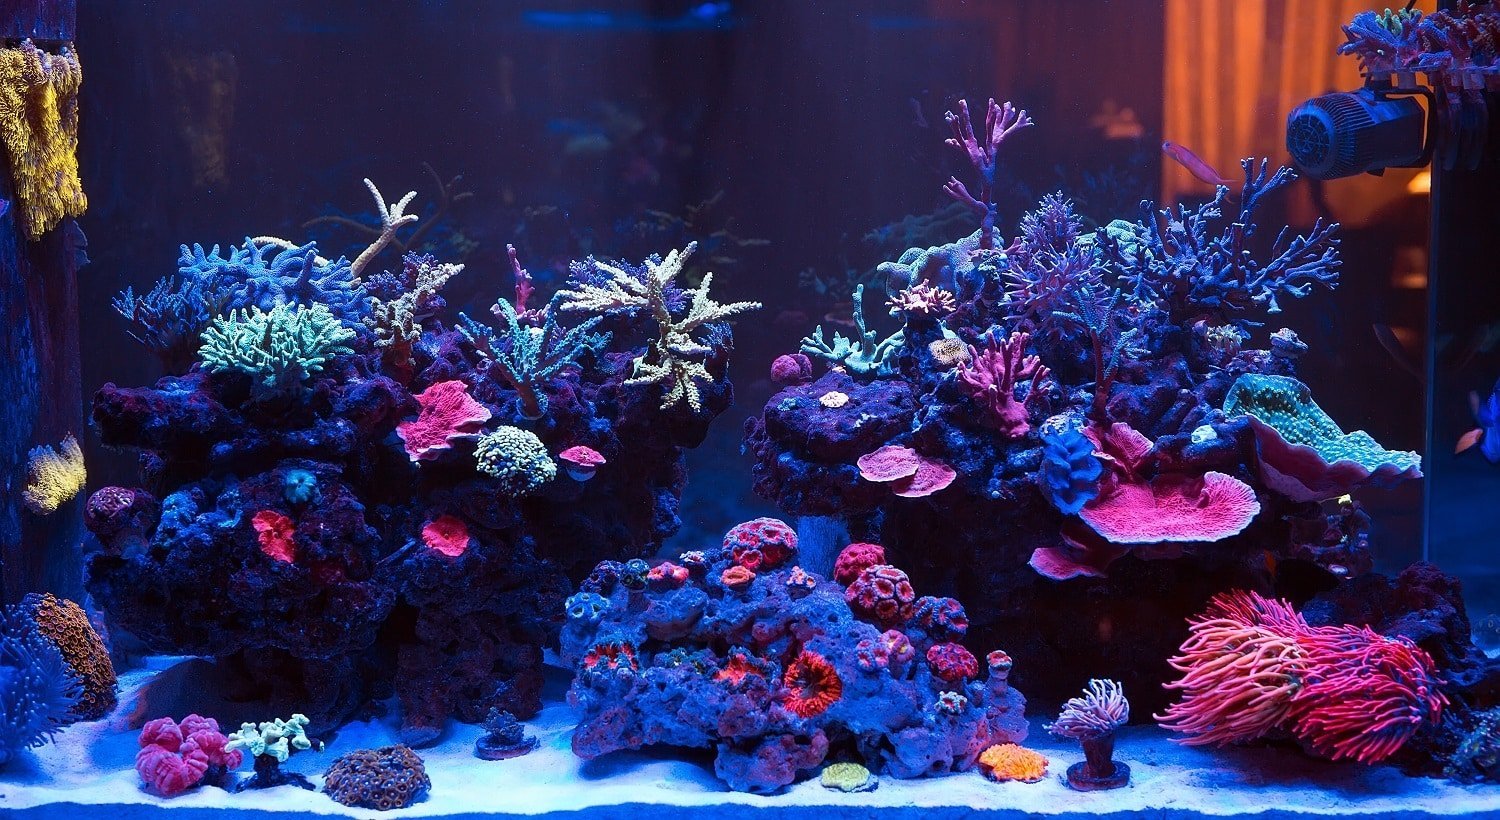 Corals in a Marine Aquarium.